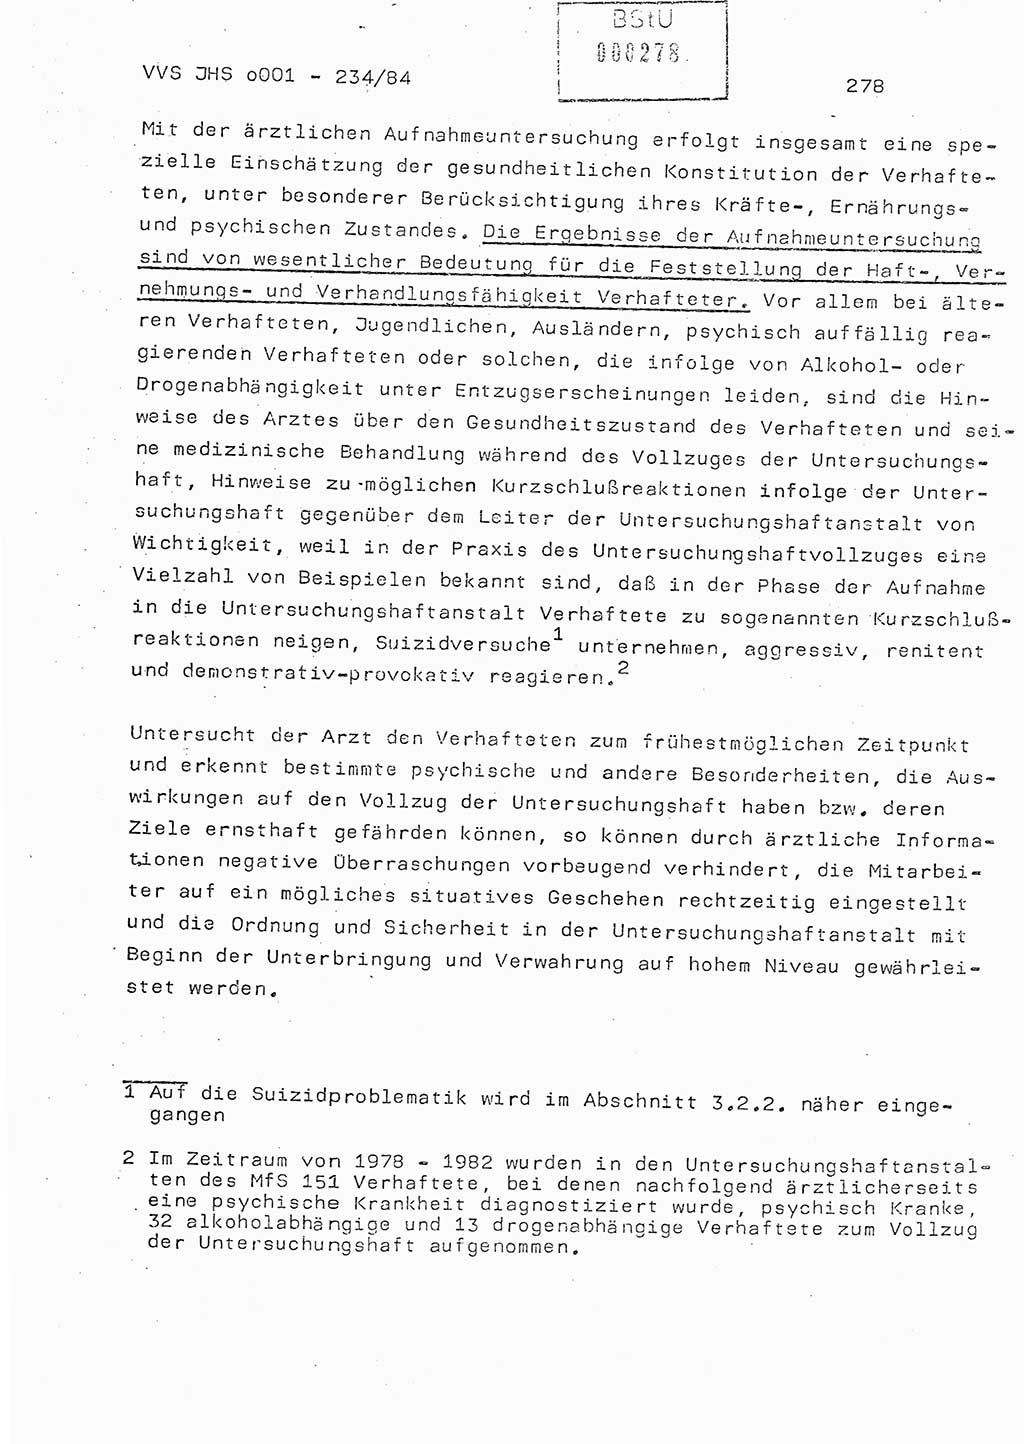 Dissertation Oberst Siegfried Rataizick (Abt. ⅩⅣ), Oberstleutnant Volkmar Heinz (Abt. ⅩⅣ), Oberstleutnant Werner Stein (HA Ⅸ), Hauptmann Heinz Conrad (JHS), Ministerium für Staatssicherheit (MfS) [Deutsche Demokratische Republik (DDR)], Juristische Hochschule (JHS), Vertrauliche Verschlußsache (VVS) o001-234/84, Potsdam 1984, Seite 278 (Diss. MfS DDR JHS VVS o001-234/84 1984, S. 278)